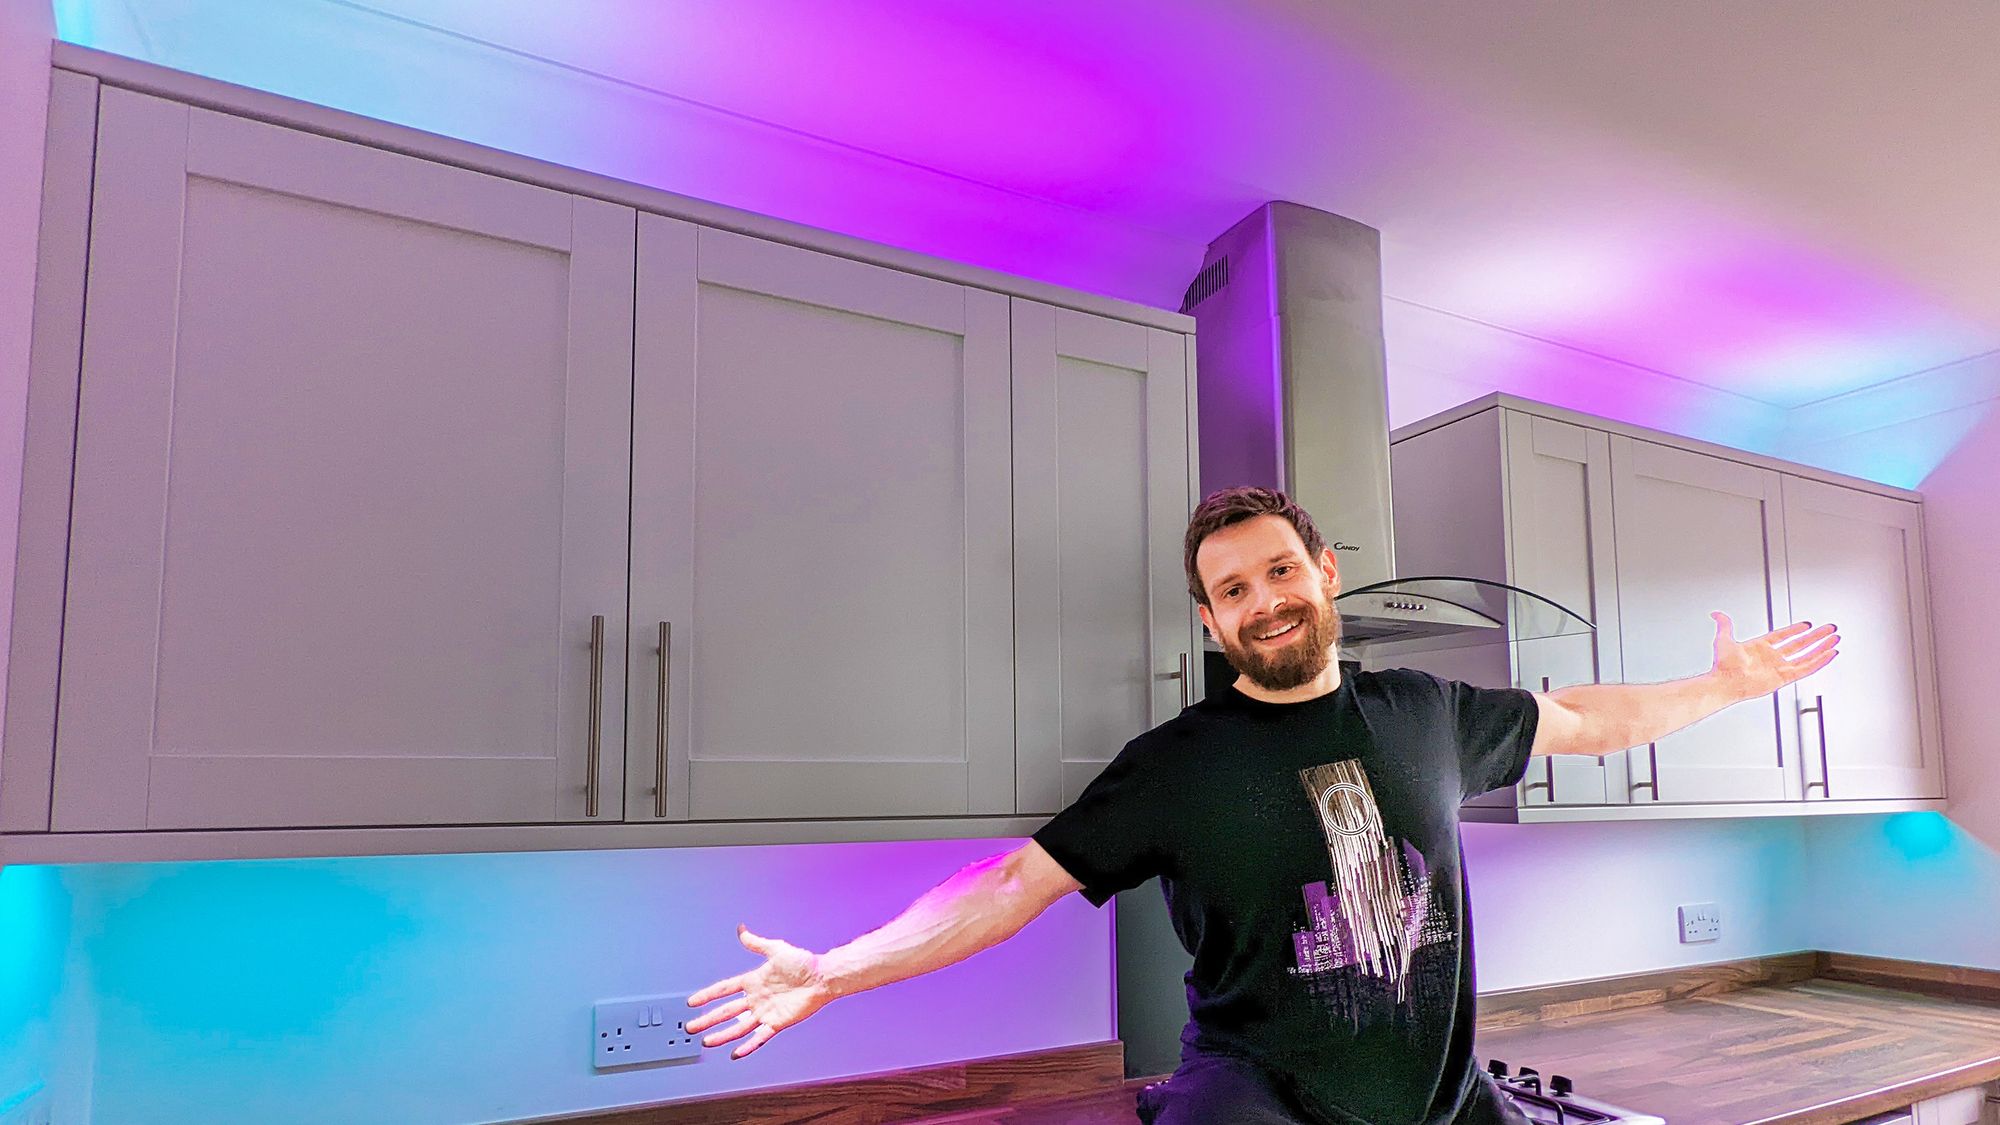 progressiv Jeg vasker mit tøj porter Transform Any Room With These DIY Smart LED Strip Lights!